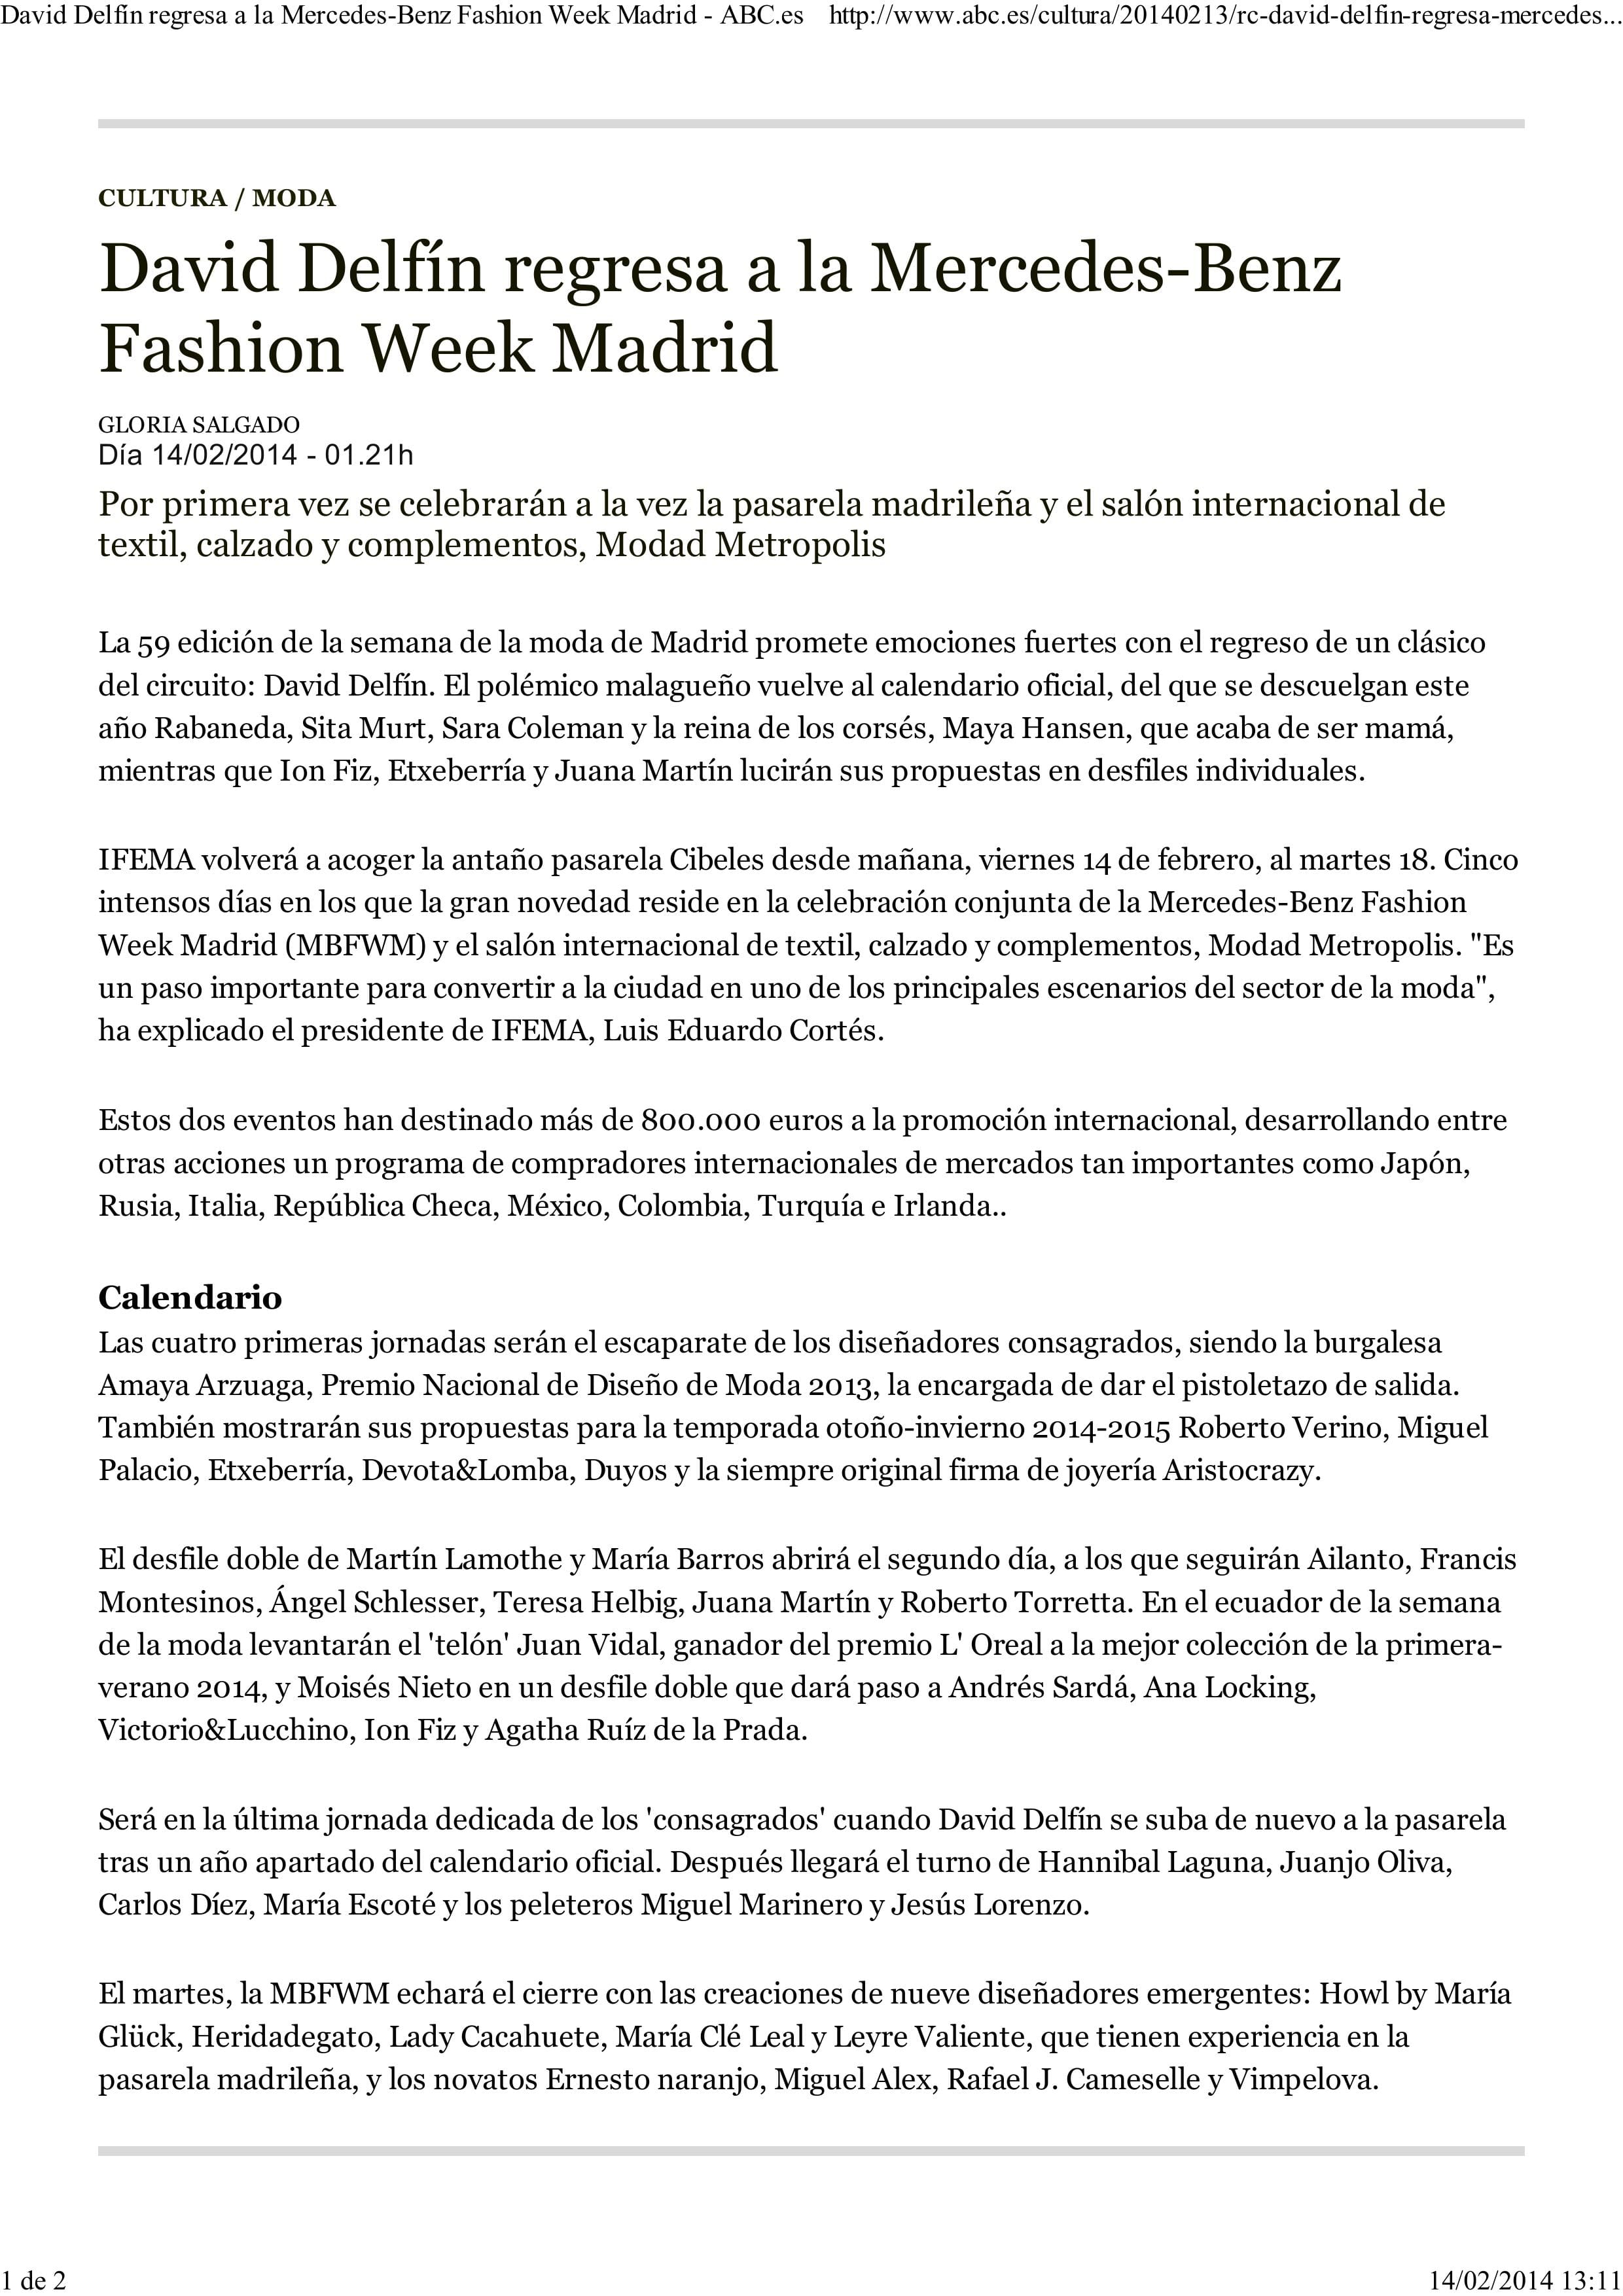 Mercedes-Benz Fashion Week Madrid 2014